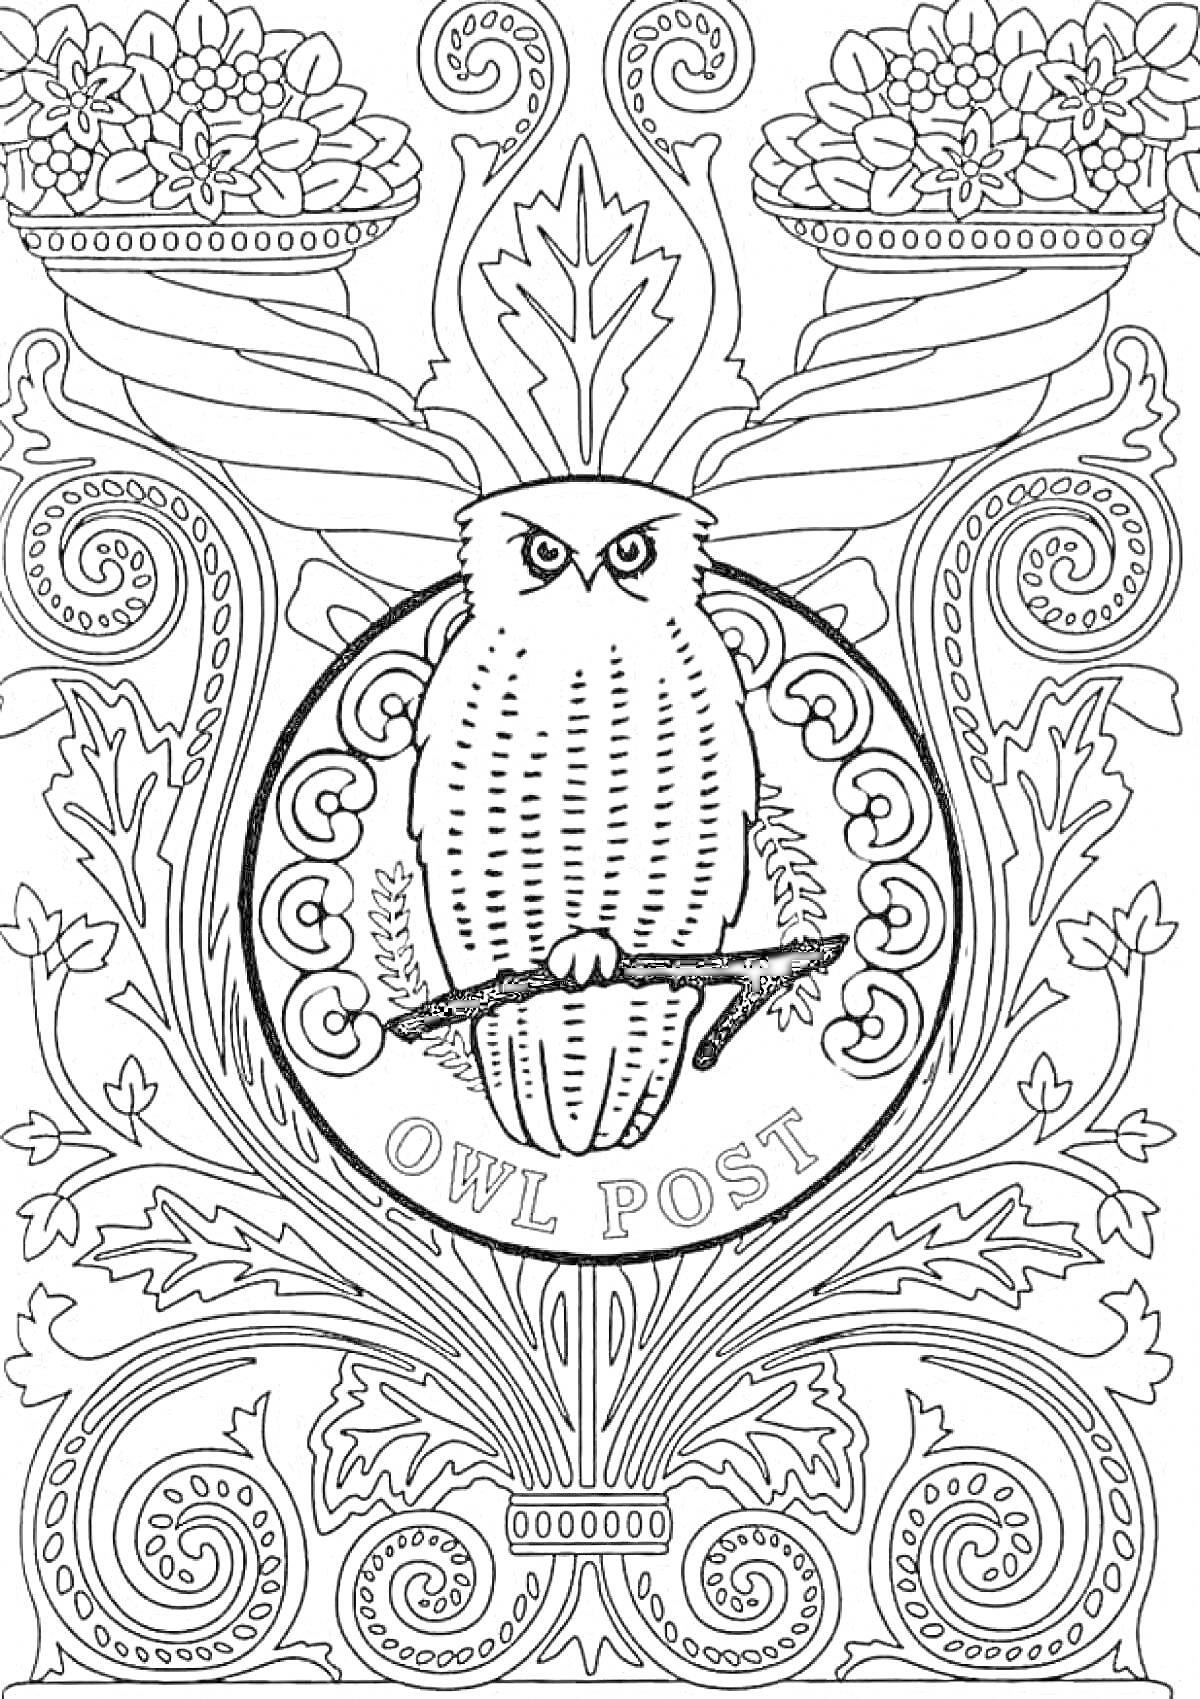 Раскраска Сова на ветке, герб Owl Post, декоративные цветочные узоры